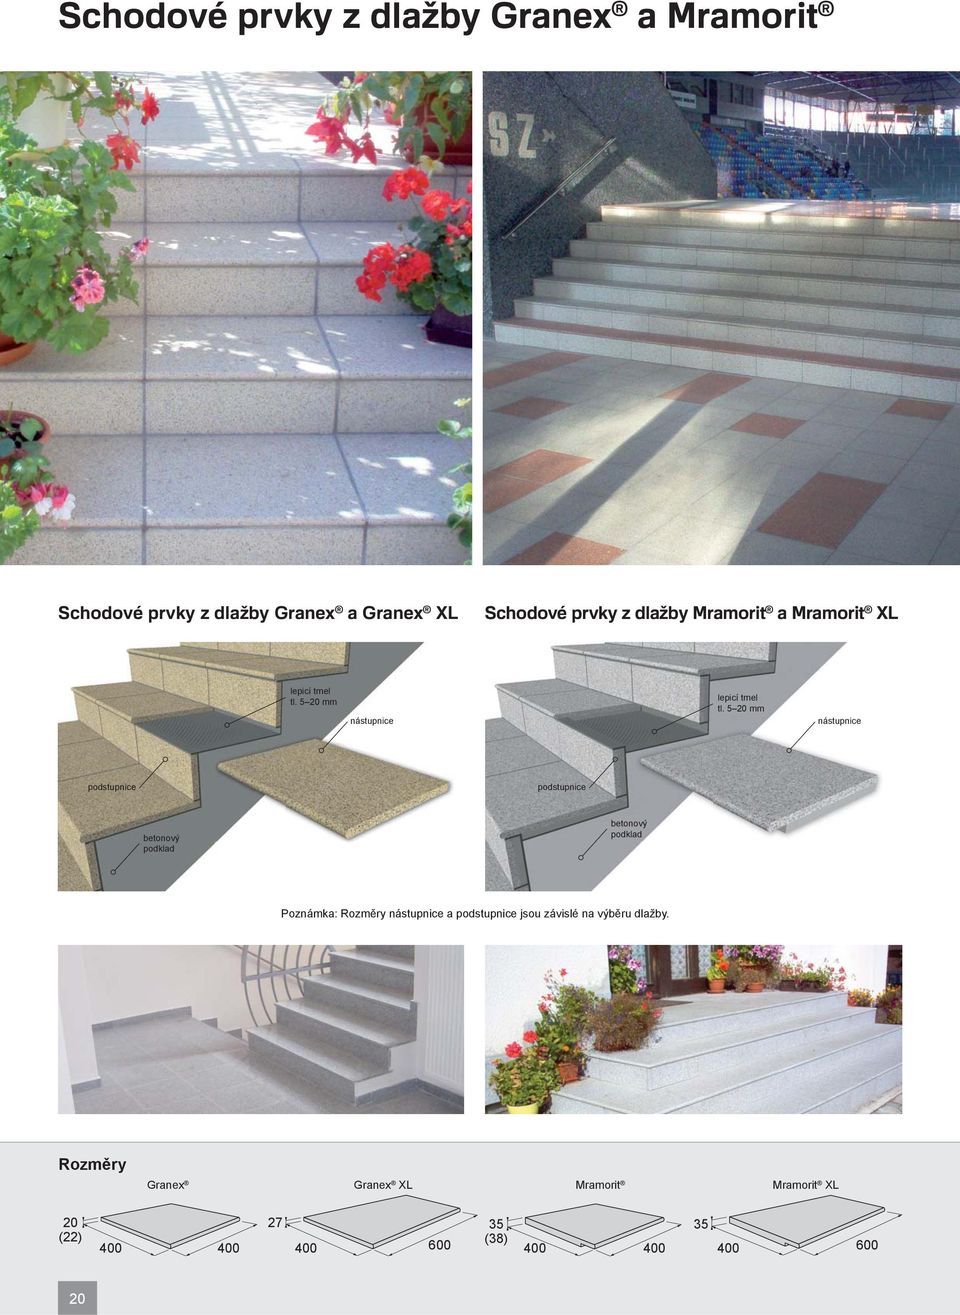 5 20 mm nástupnice podstupnice podstupnice betonový podklad betonový podklad Poznámka: Rozměry nástupnice a